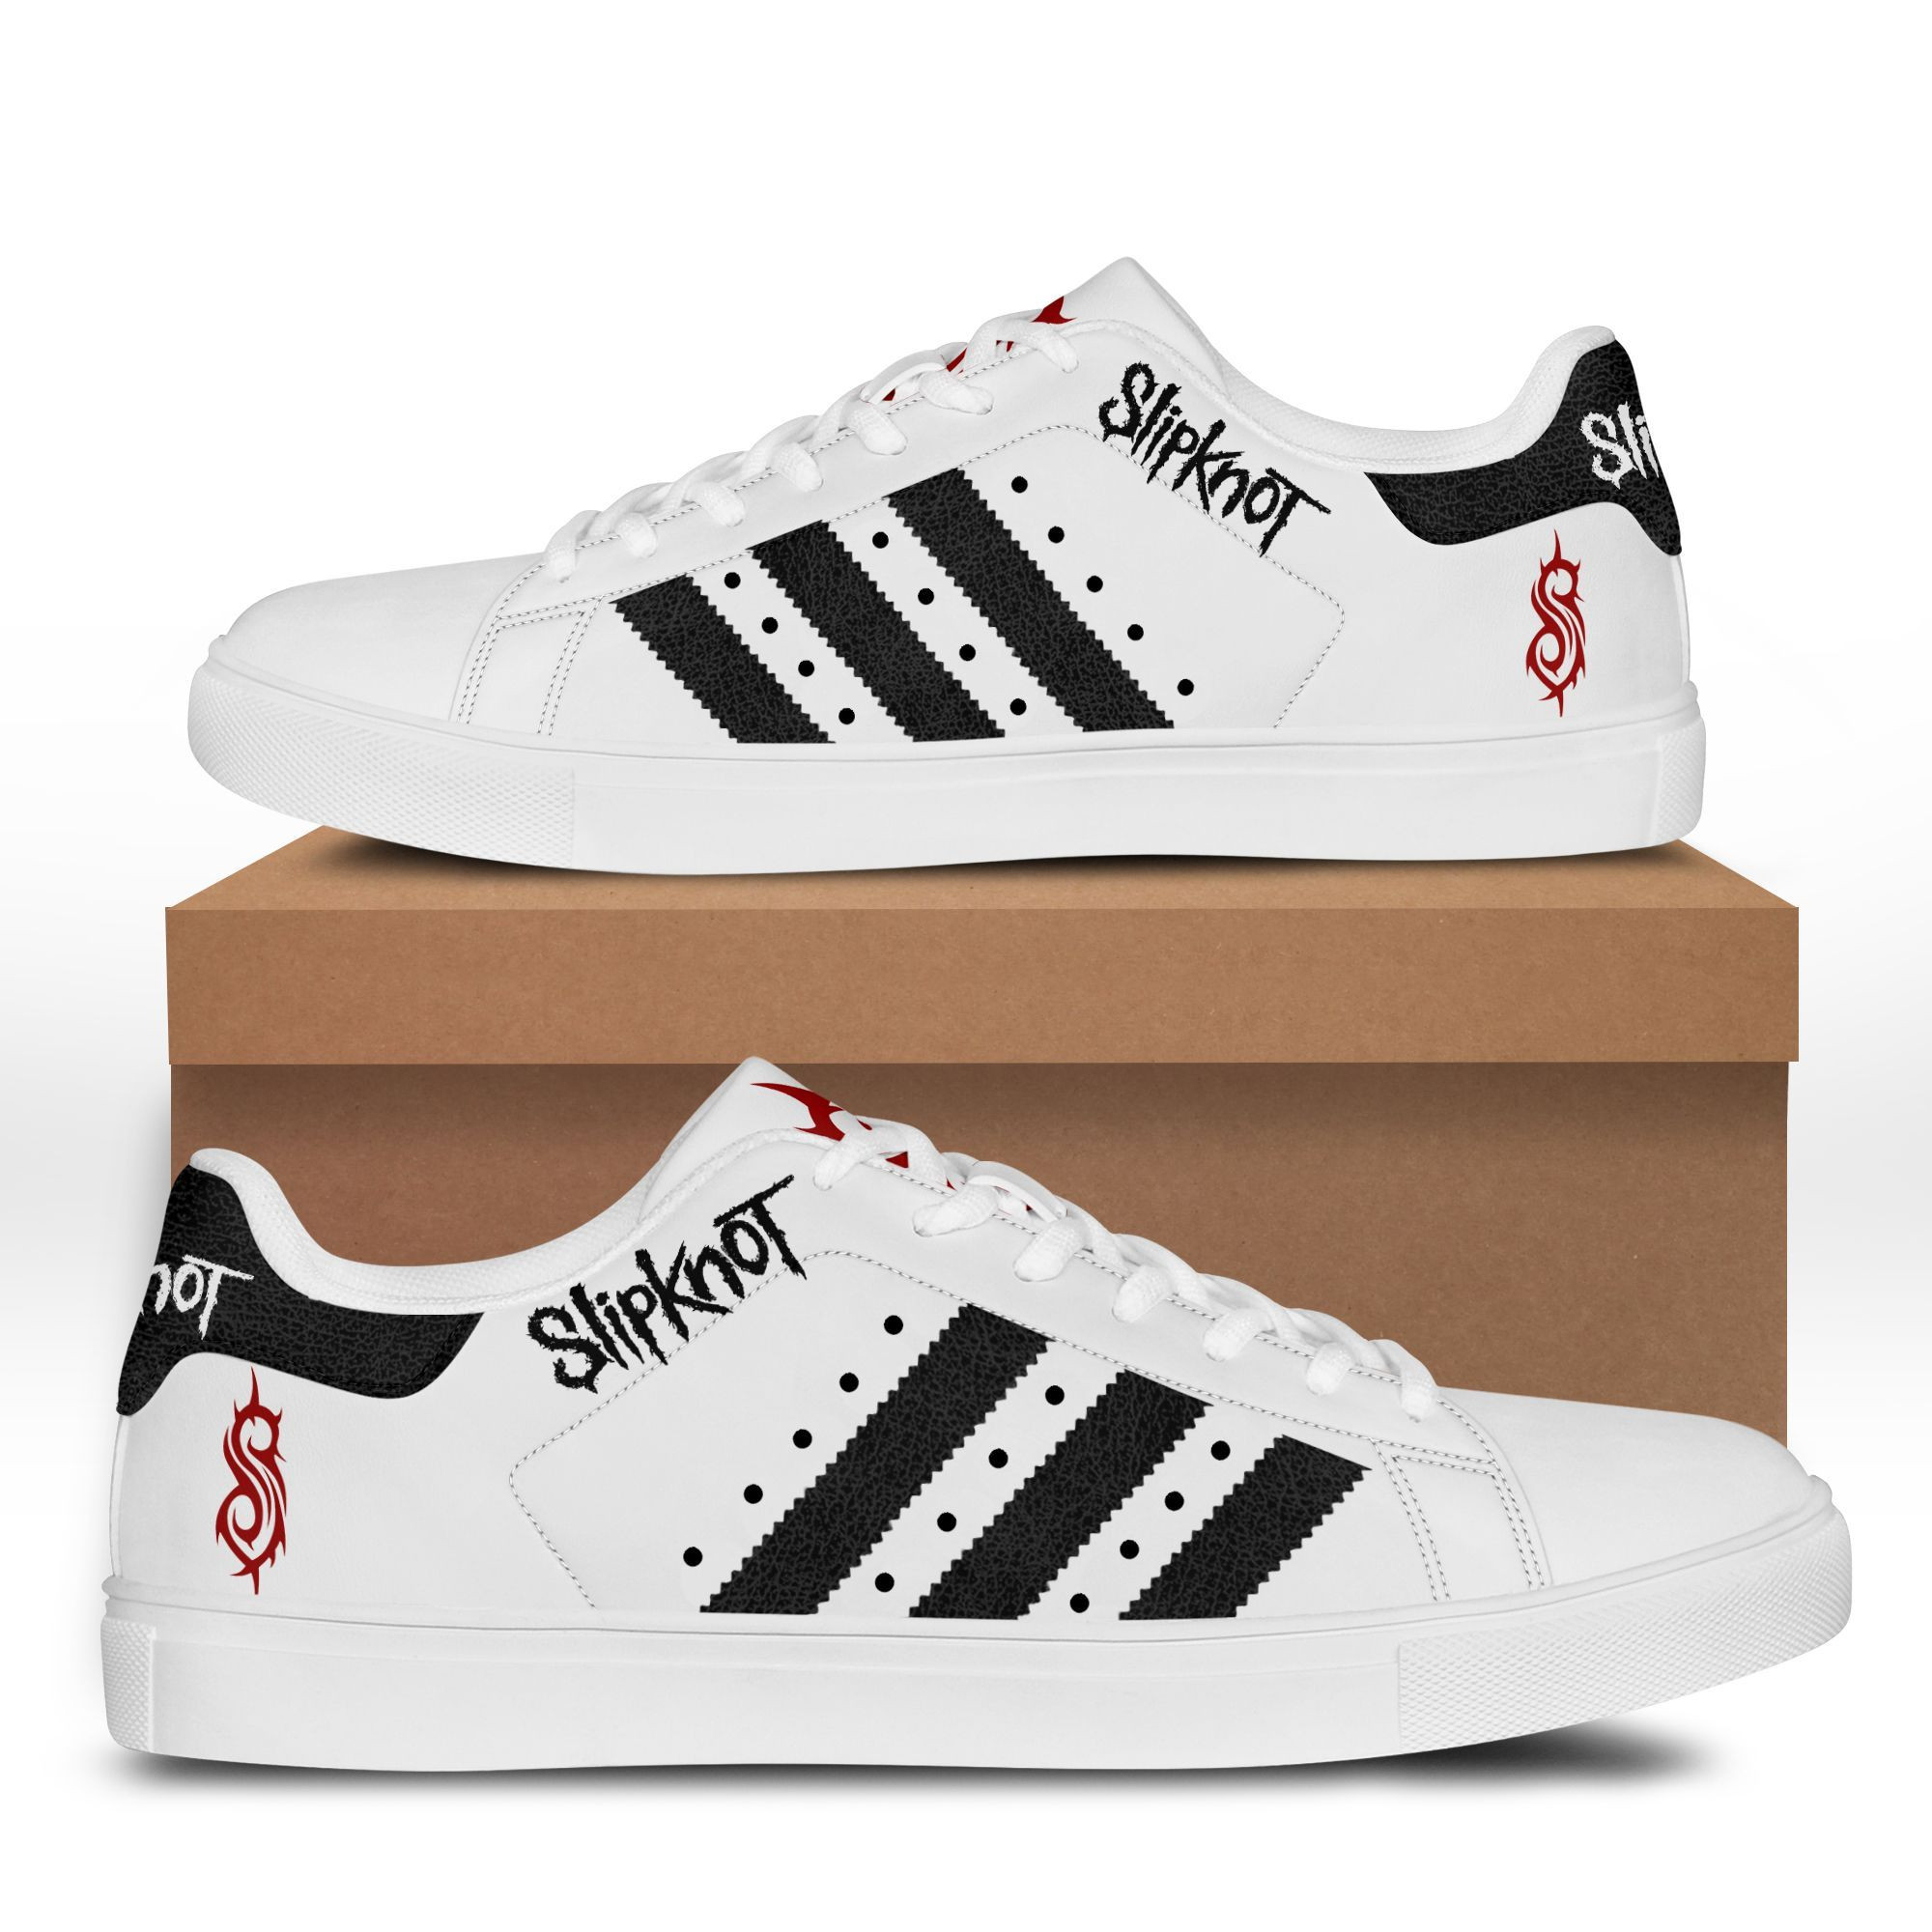 Slipknot Dvt-Hl St Smith Shoes Ver 1 (White)